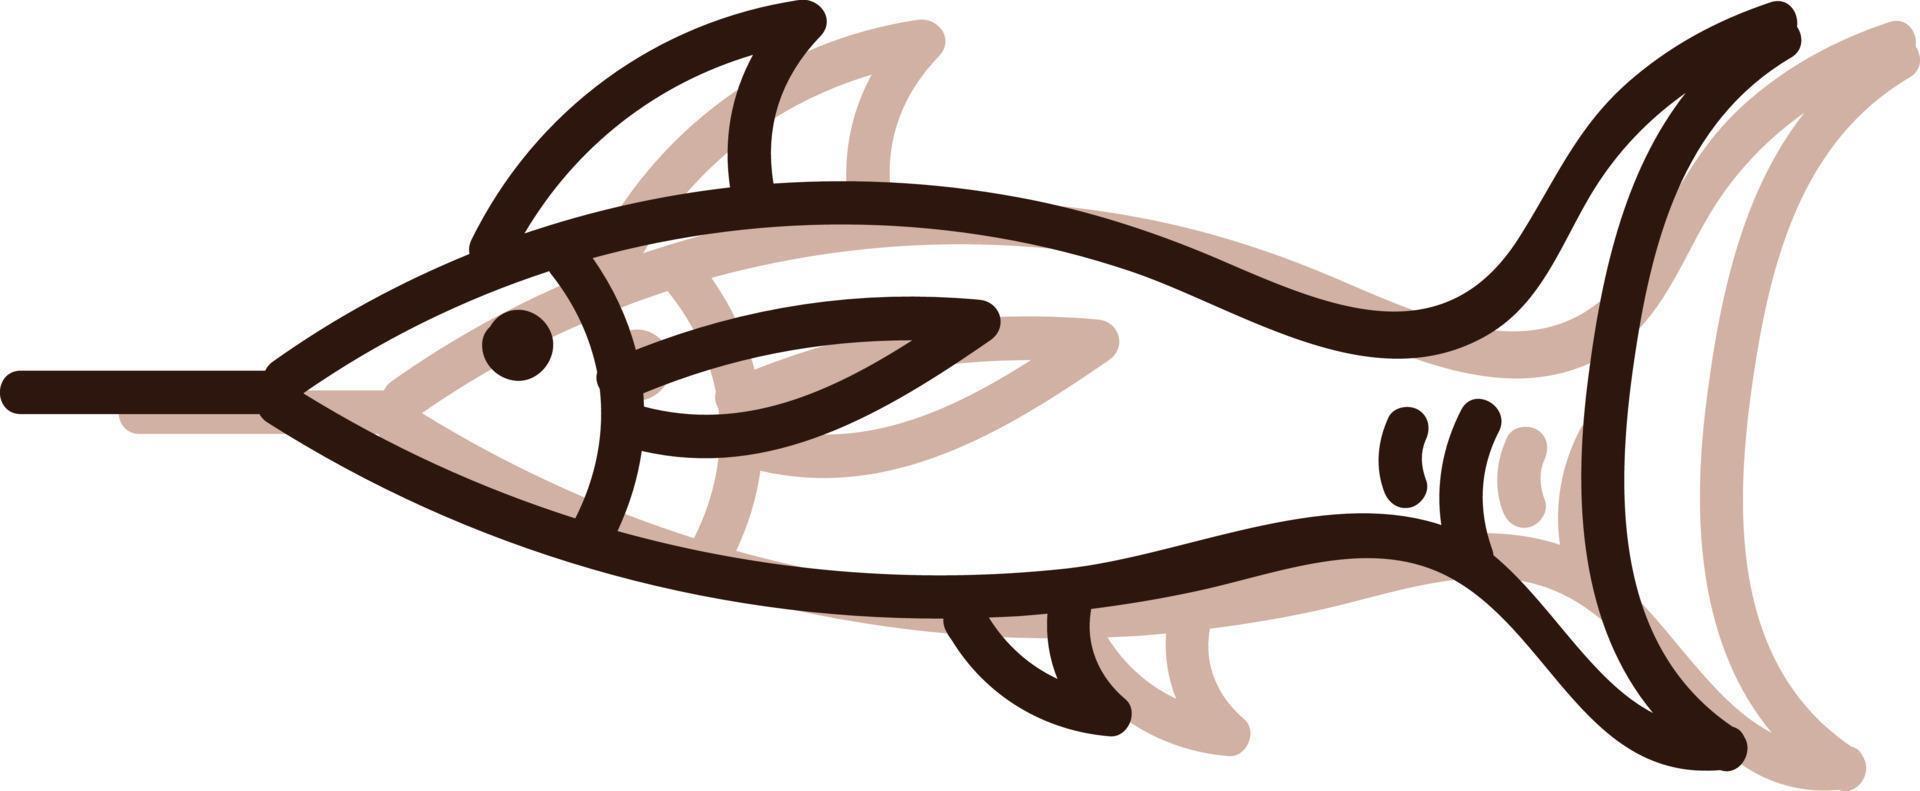 poisson de mer avec sharpnose, illustration, vecteur sur fond blanc.